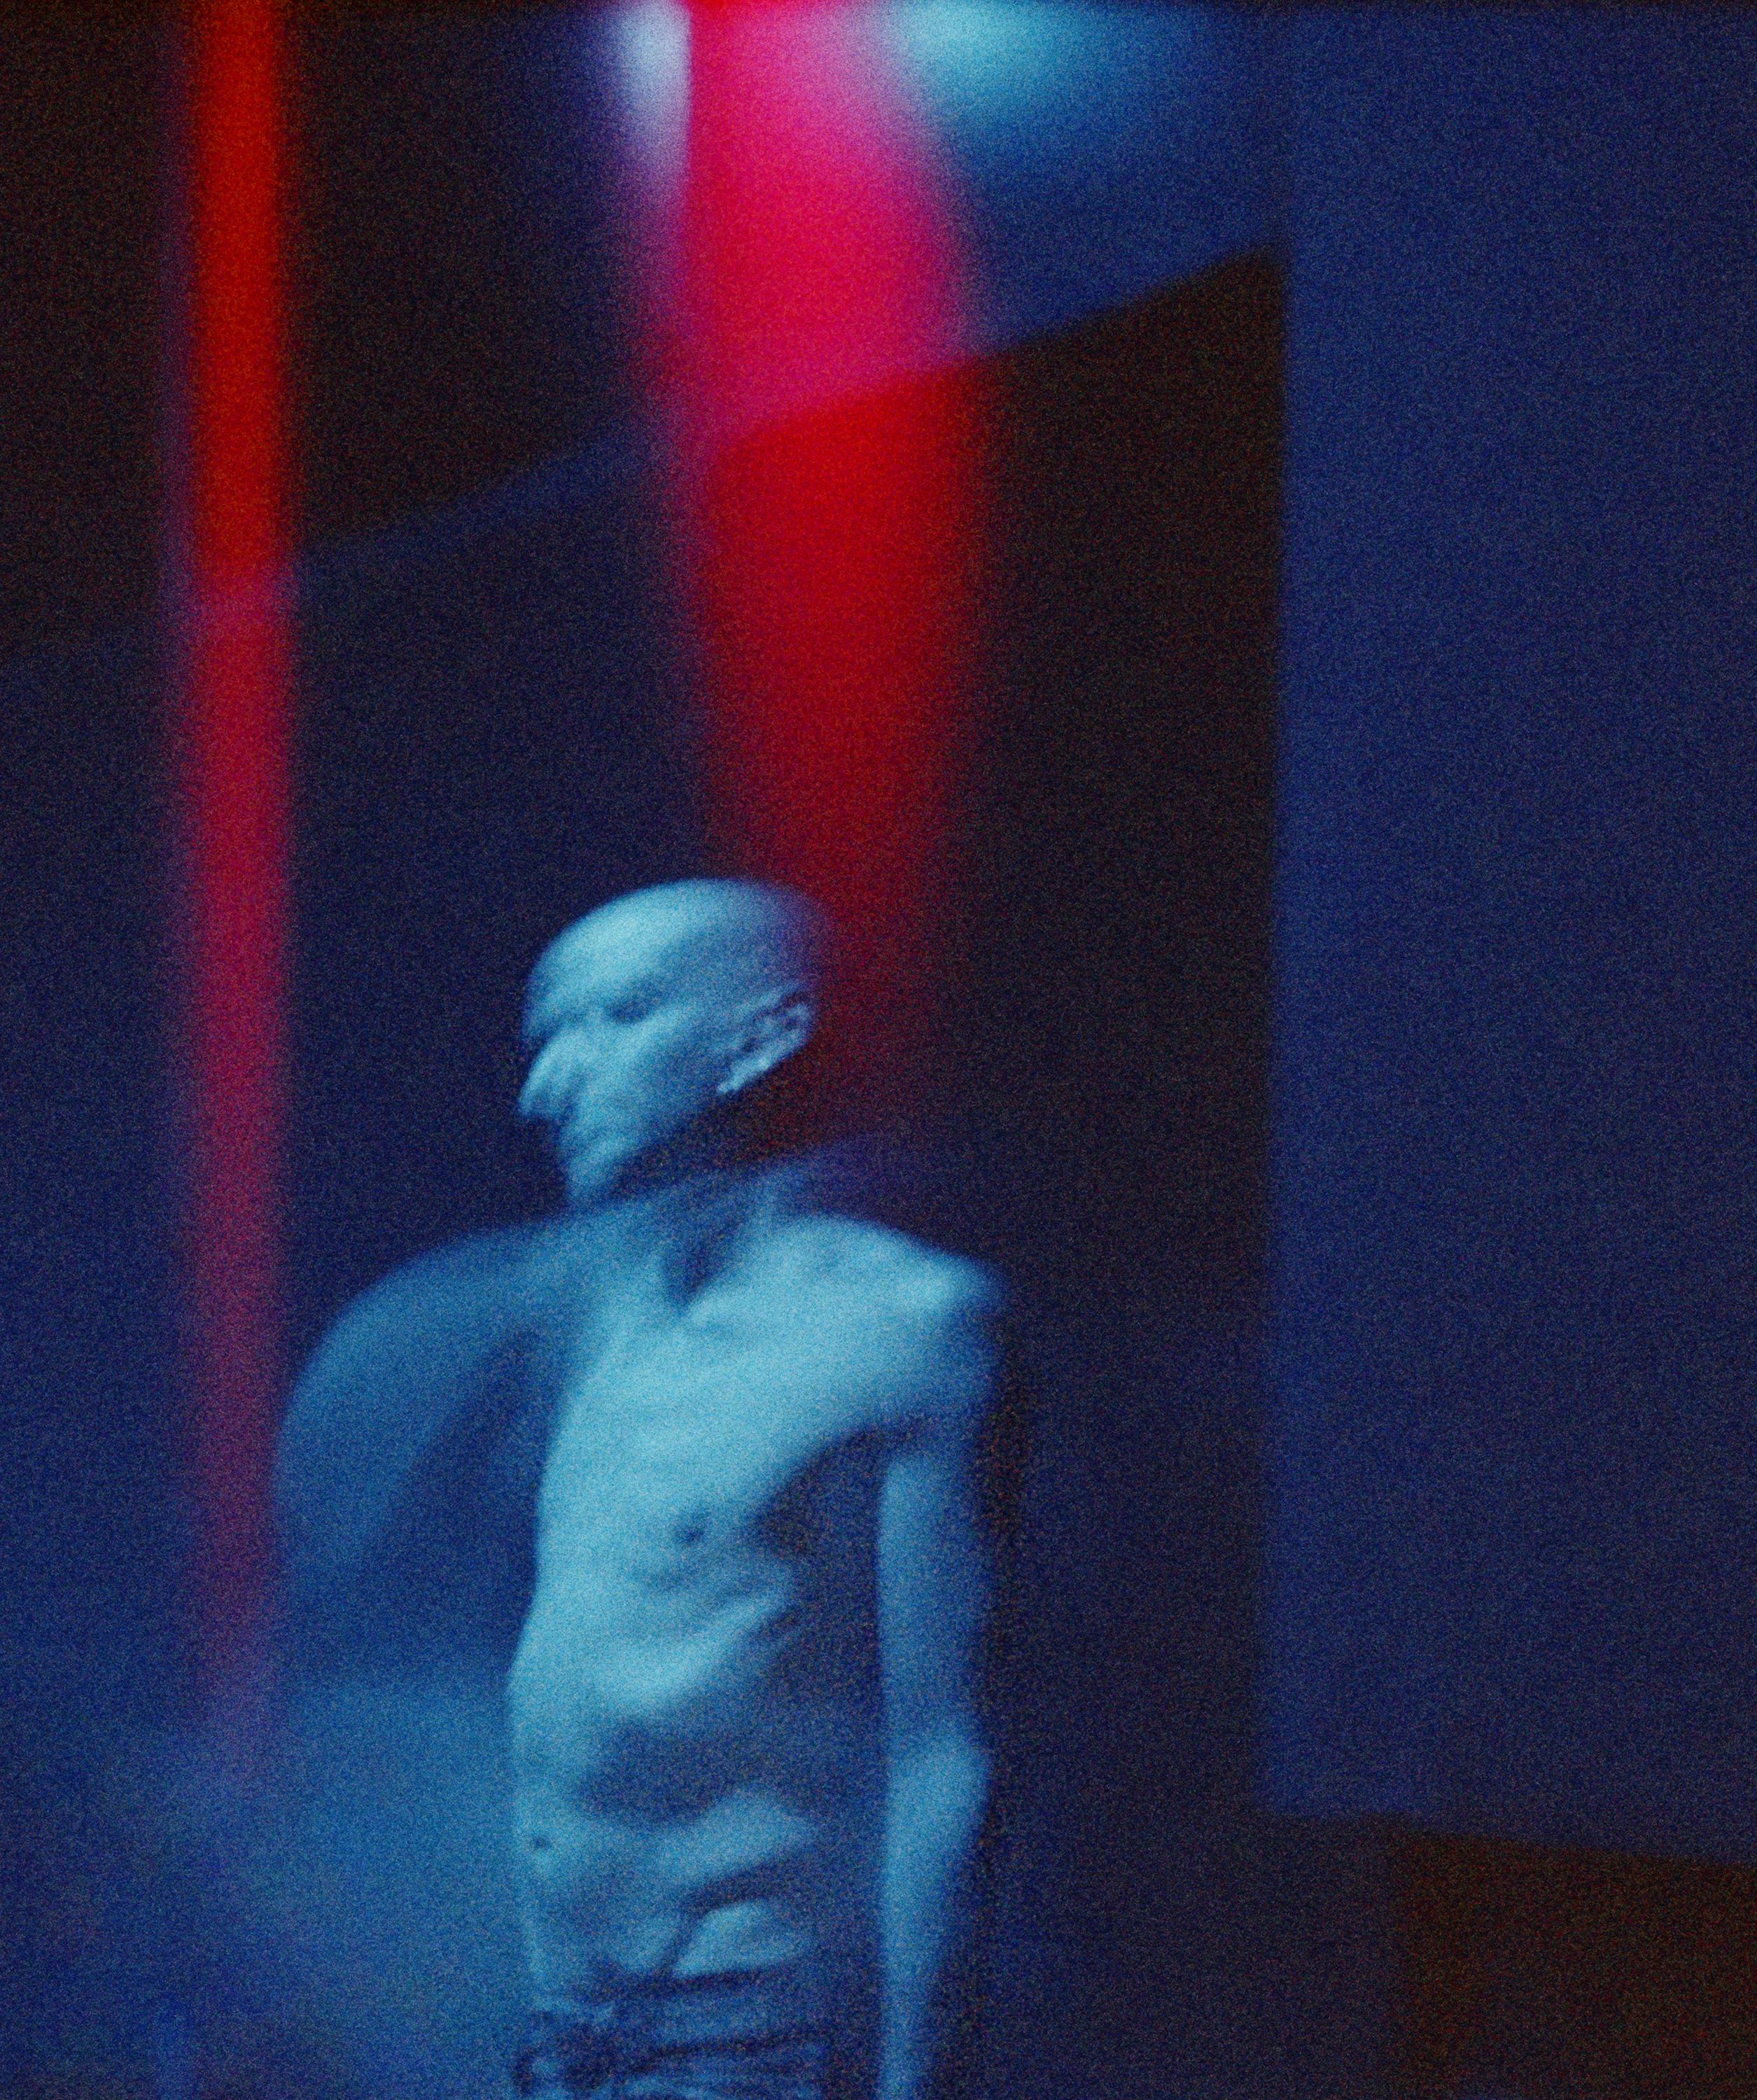 Danseur debout dans les coulisses sous une lumière bleue avec des reflets rouges